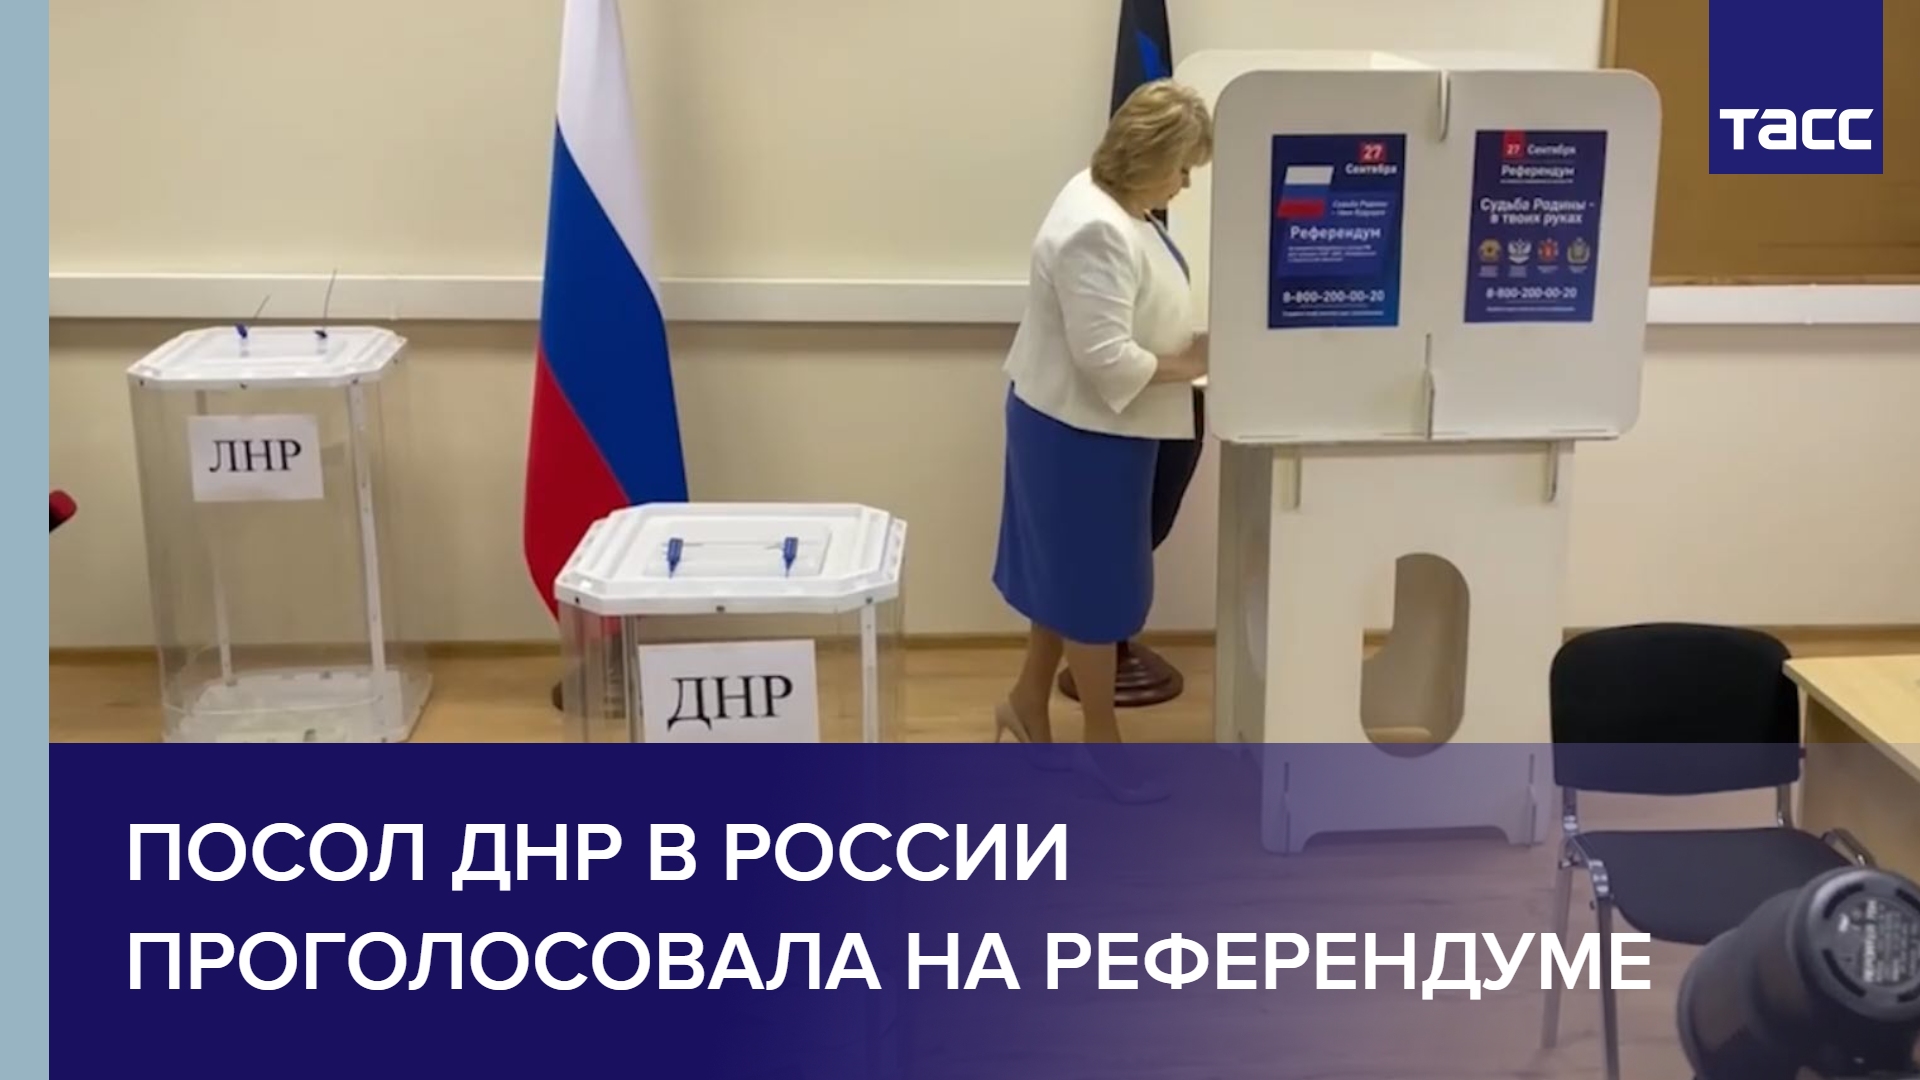 Посол ДНР в России проголосовала на референдуме #shorts